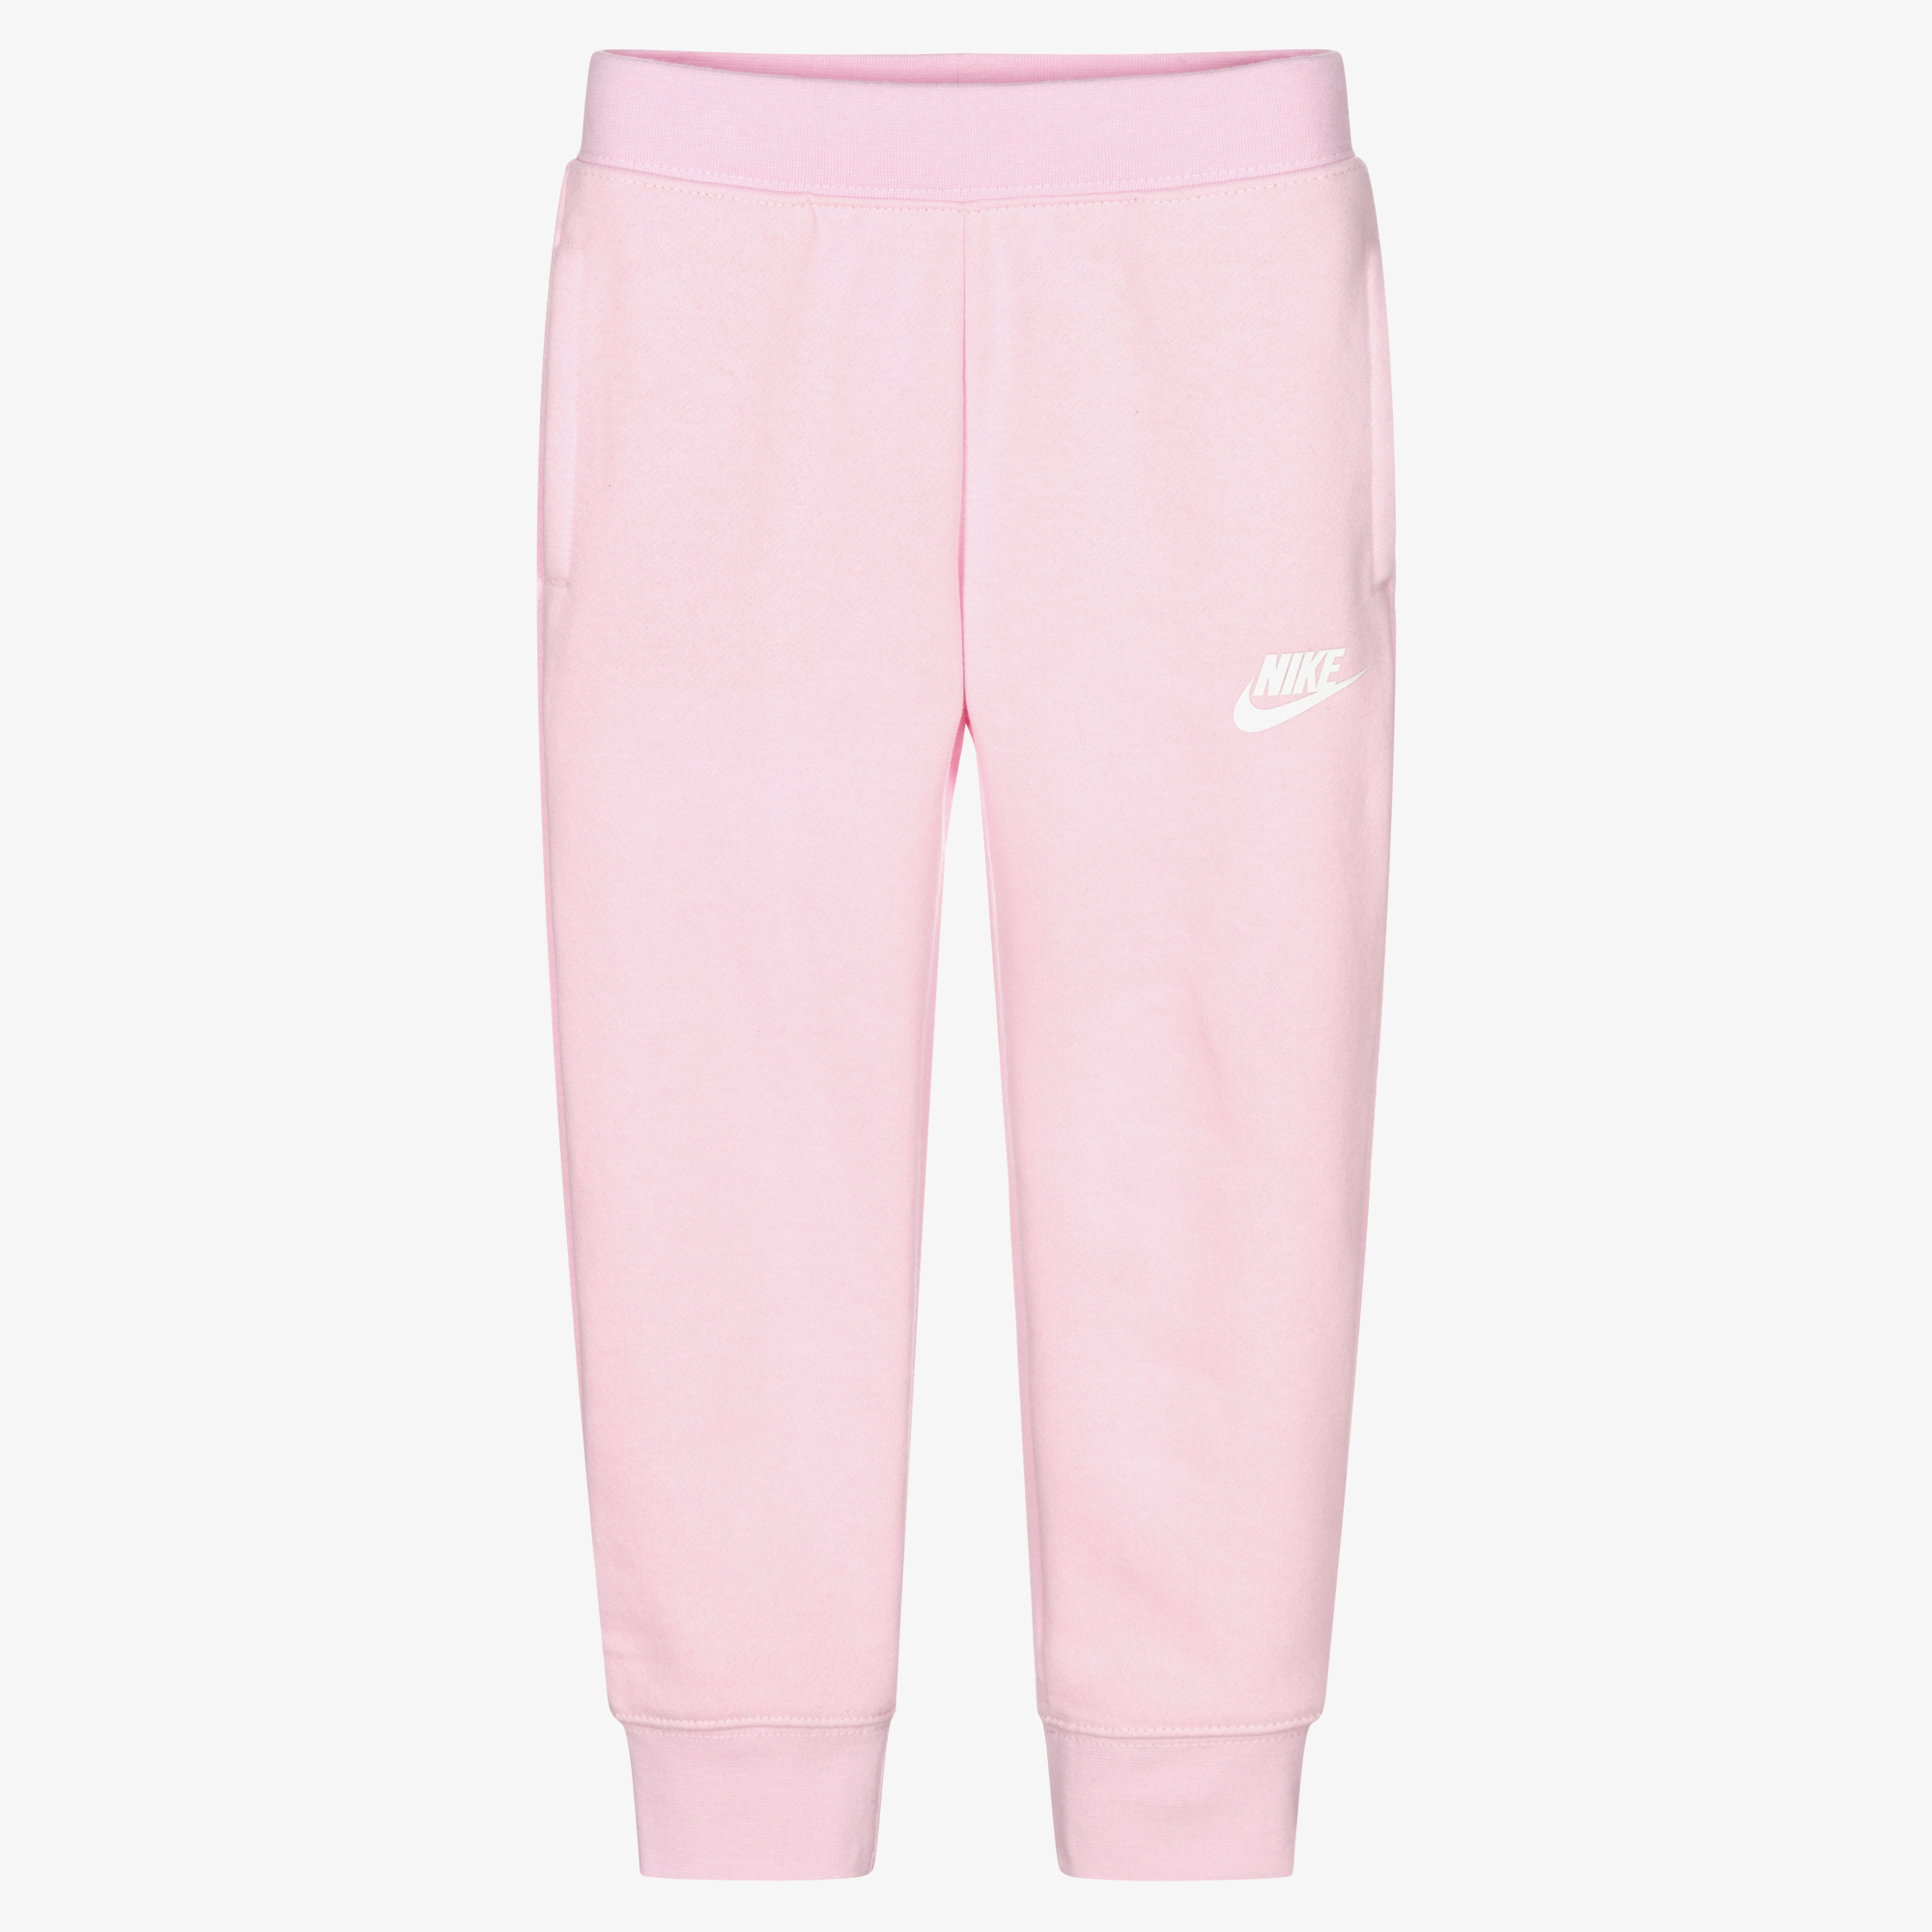 Nike - Girls Pink Logo Cotton Joggers